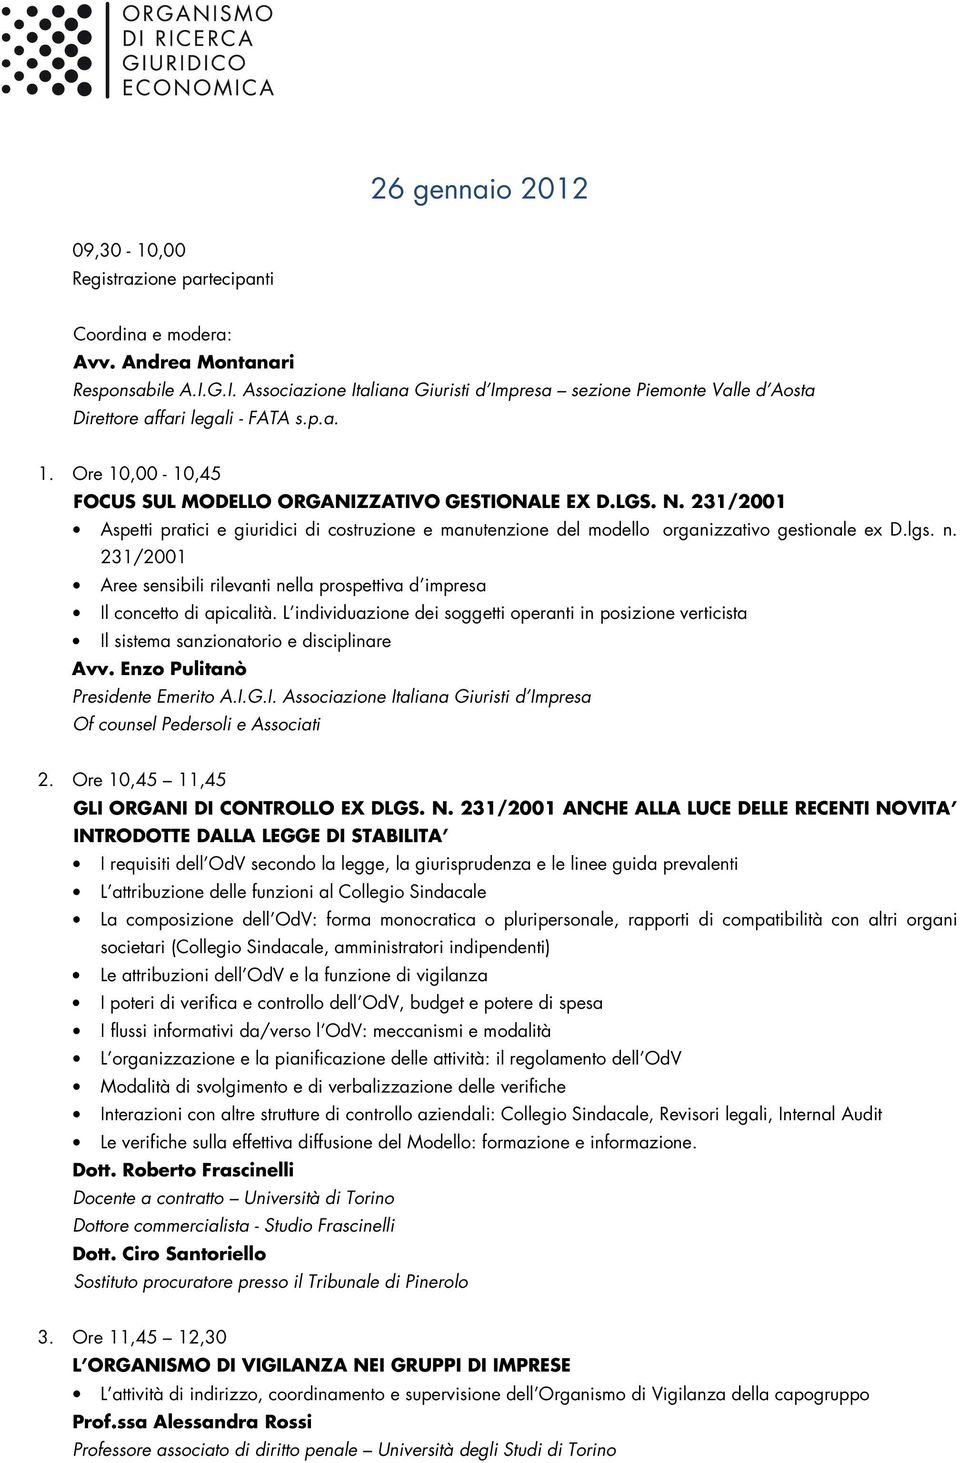 231/2001 Aspetti pratici e giuridici di costruzione e manutenzione del modello organizzativo gestionale ex D.lgs. n.